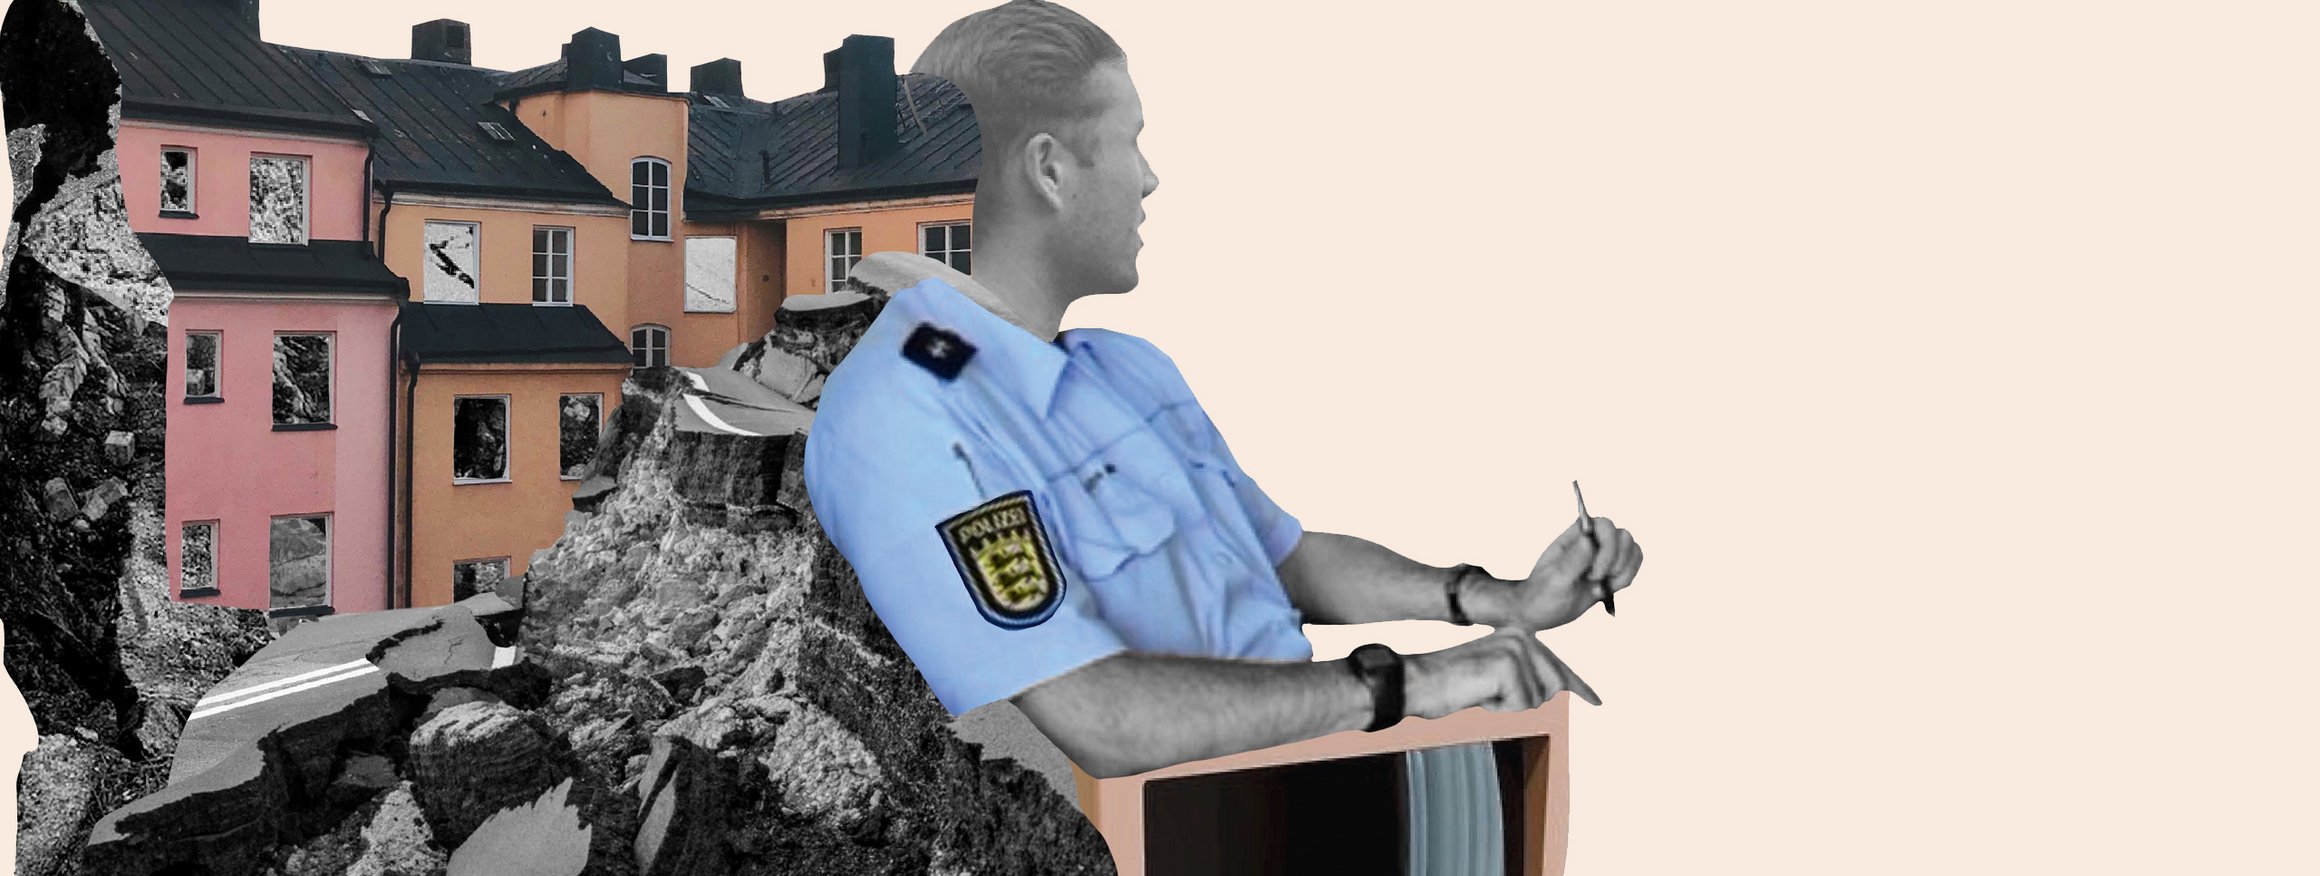 Die Illustration zeigt einen Polizisten in Uniform, der in die Ferne schaut, die Arme auf einem Bildschirm abgelegt, während hinter ihm Häuser sind, die vor einem Abgrund sind